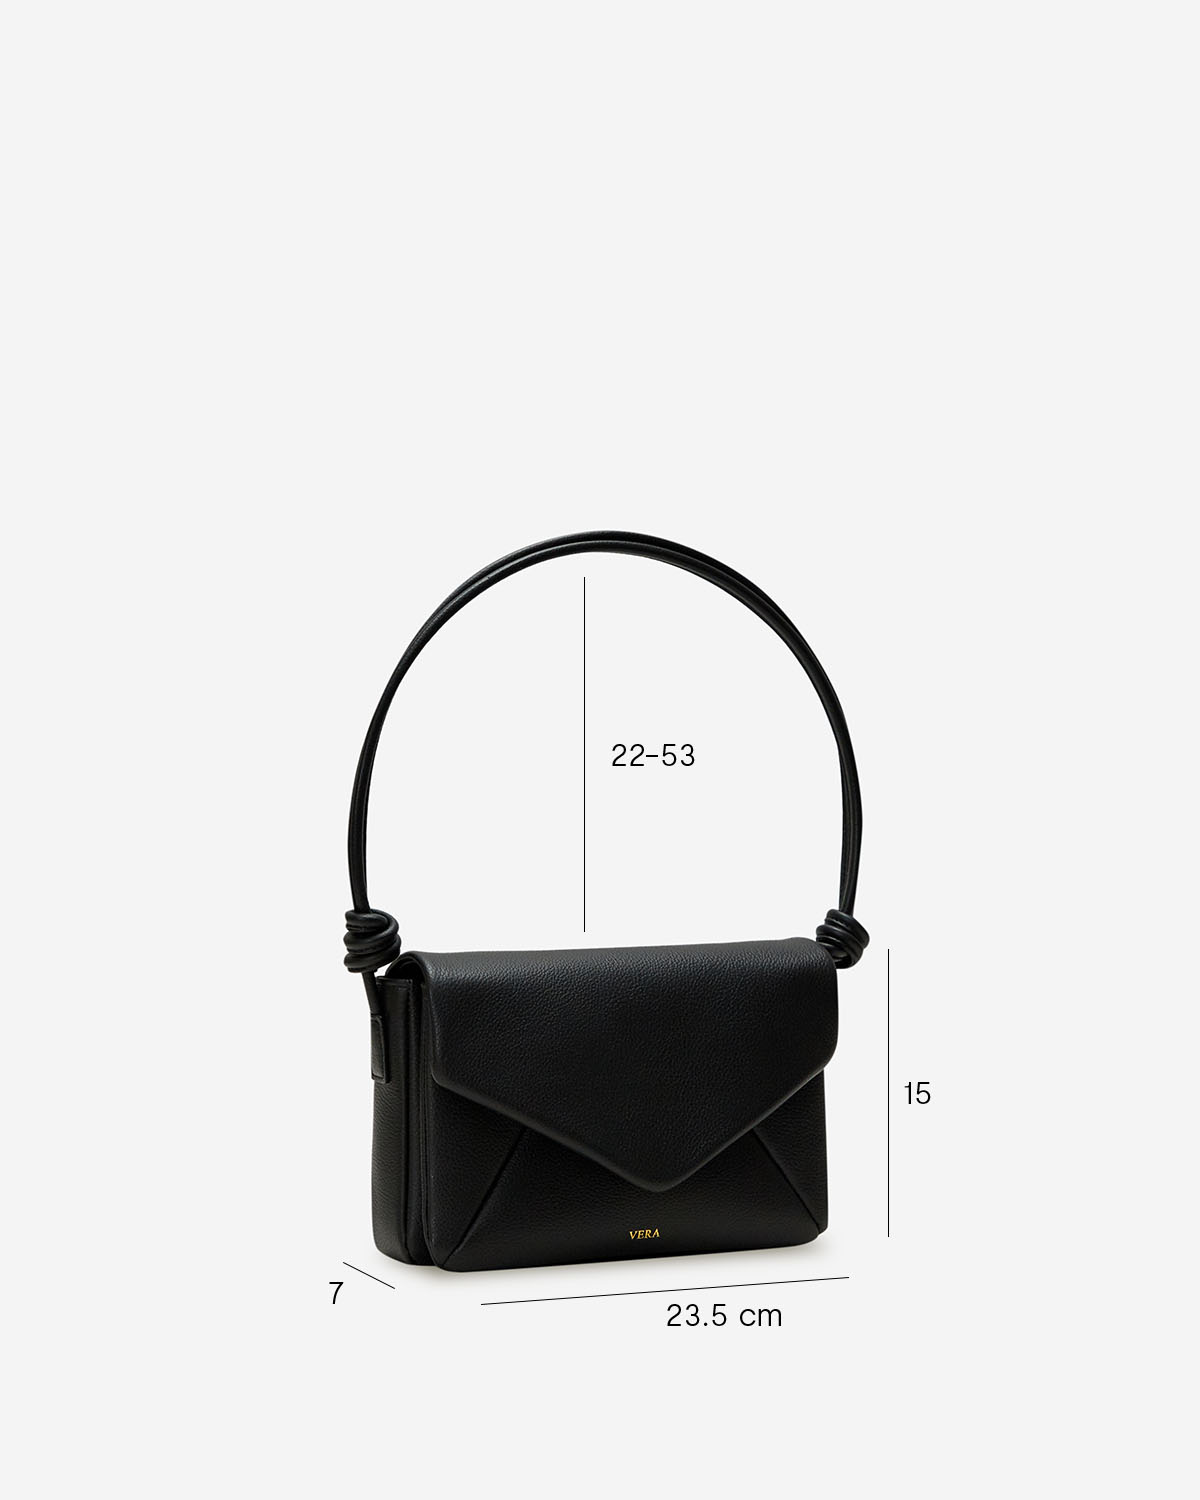 กระเป๋าสะพายข้างหนังแท้ VERA Enveloppe Leather Shoulder & Crossbody bag สี Urban Black